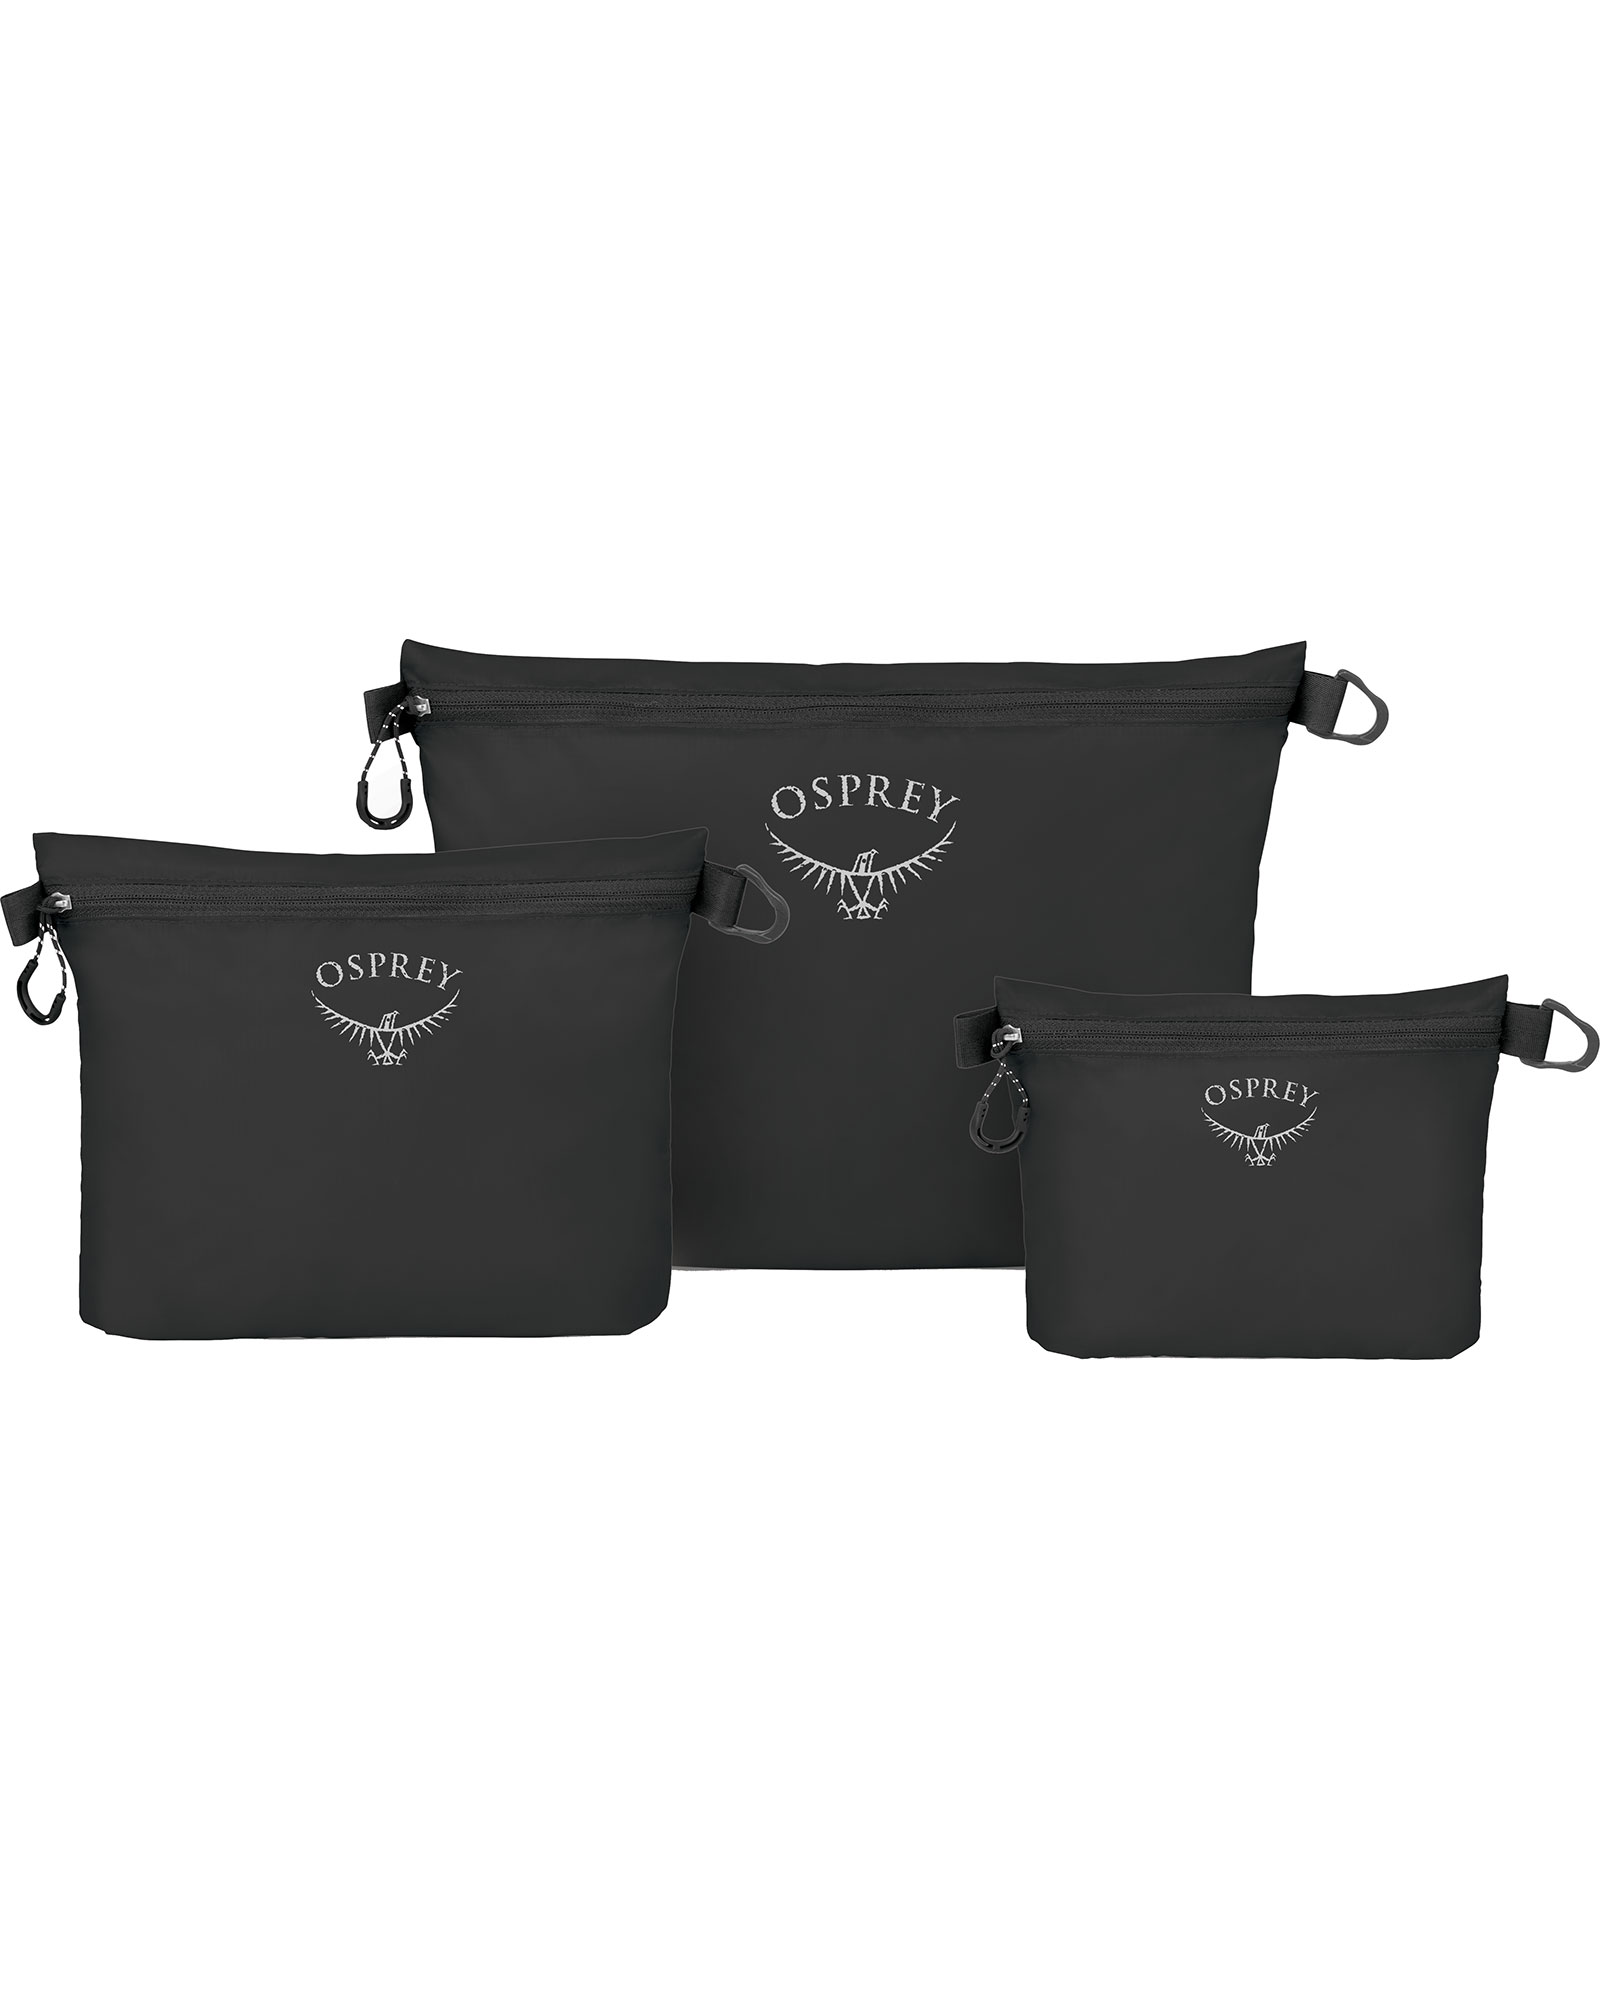 Osprey Ultralight Zipper Sack Set Packing Organiser - black